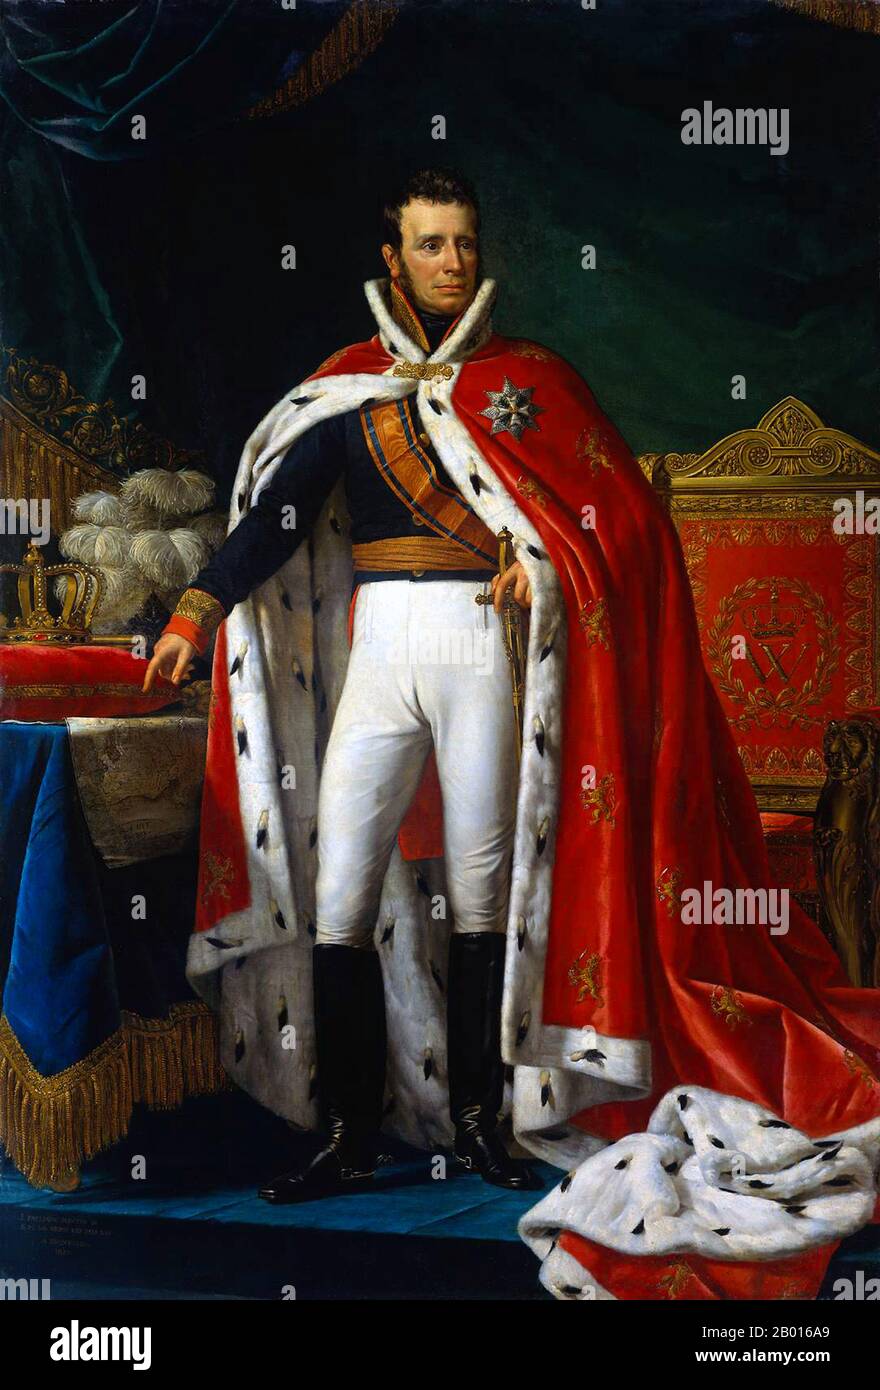 Niederlande: Wilhelm I. (24. August 1772 - 12. Dezember 1843), König der Niederlande (r. 1815-1840). Öl auf Leinwand, Gemälde von Joseph Paelinck (1781-1839), 1819. Wilhelm I. war der Prinz von Oranien, der Großherzog von Luxemburg und der König der Niederlande. Als Sohn des letzten Stadtholder der Niederländischen Republik wurde er nach einem Abkommen mit Napoleon 1803 Herrscher des Fürstentums Nassau-Oranien-Fulda, der ihn 1806 absetzte. Nach der Niederlage Napoleons im Jahr 1813 wurde er zum souveränen Prinzen der Vereinigten Niederlande ernannt und wurde 1815 zum König ernannt. Stockfoto